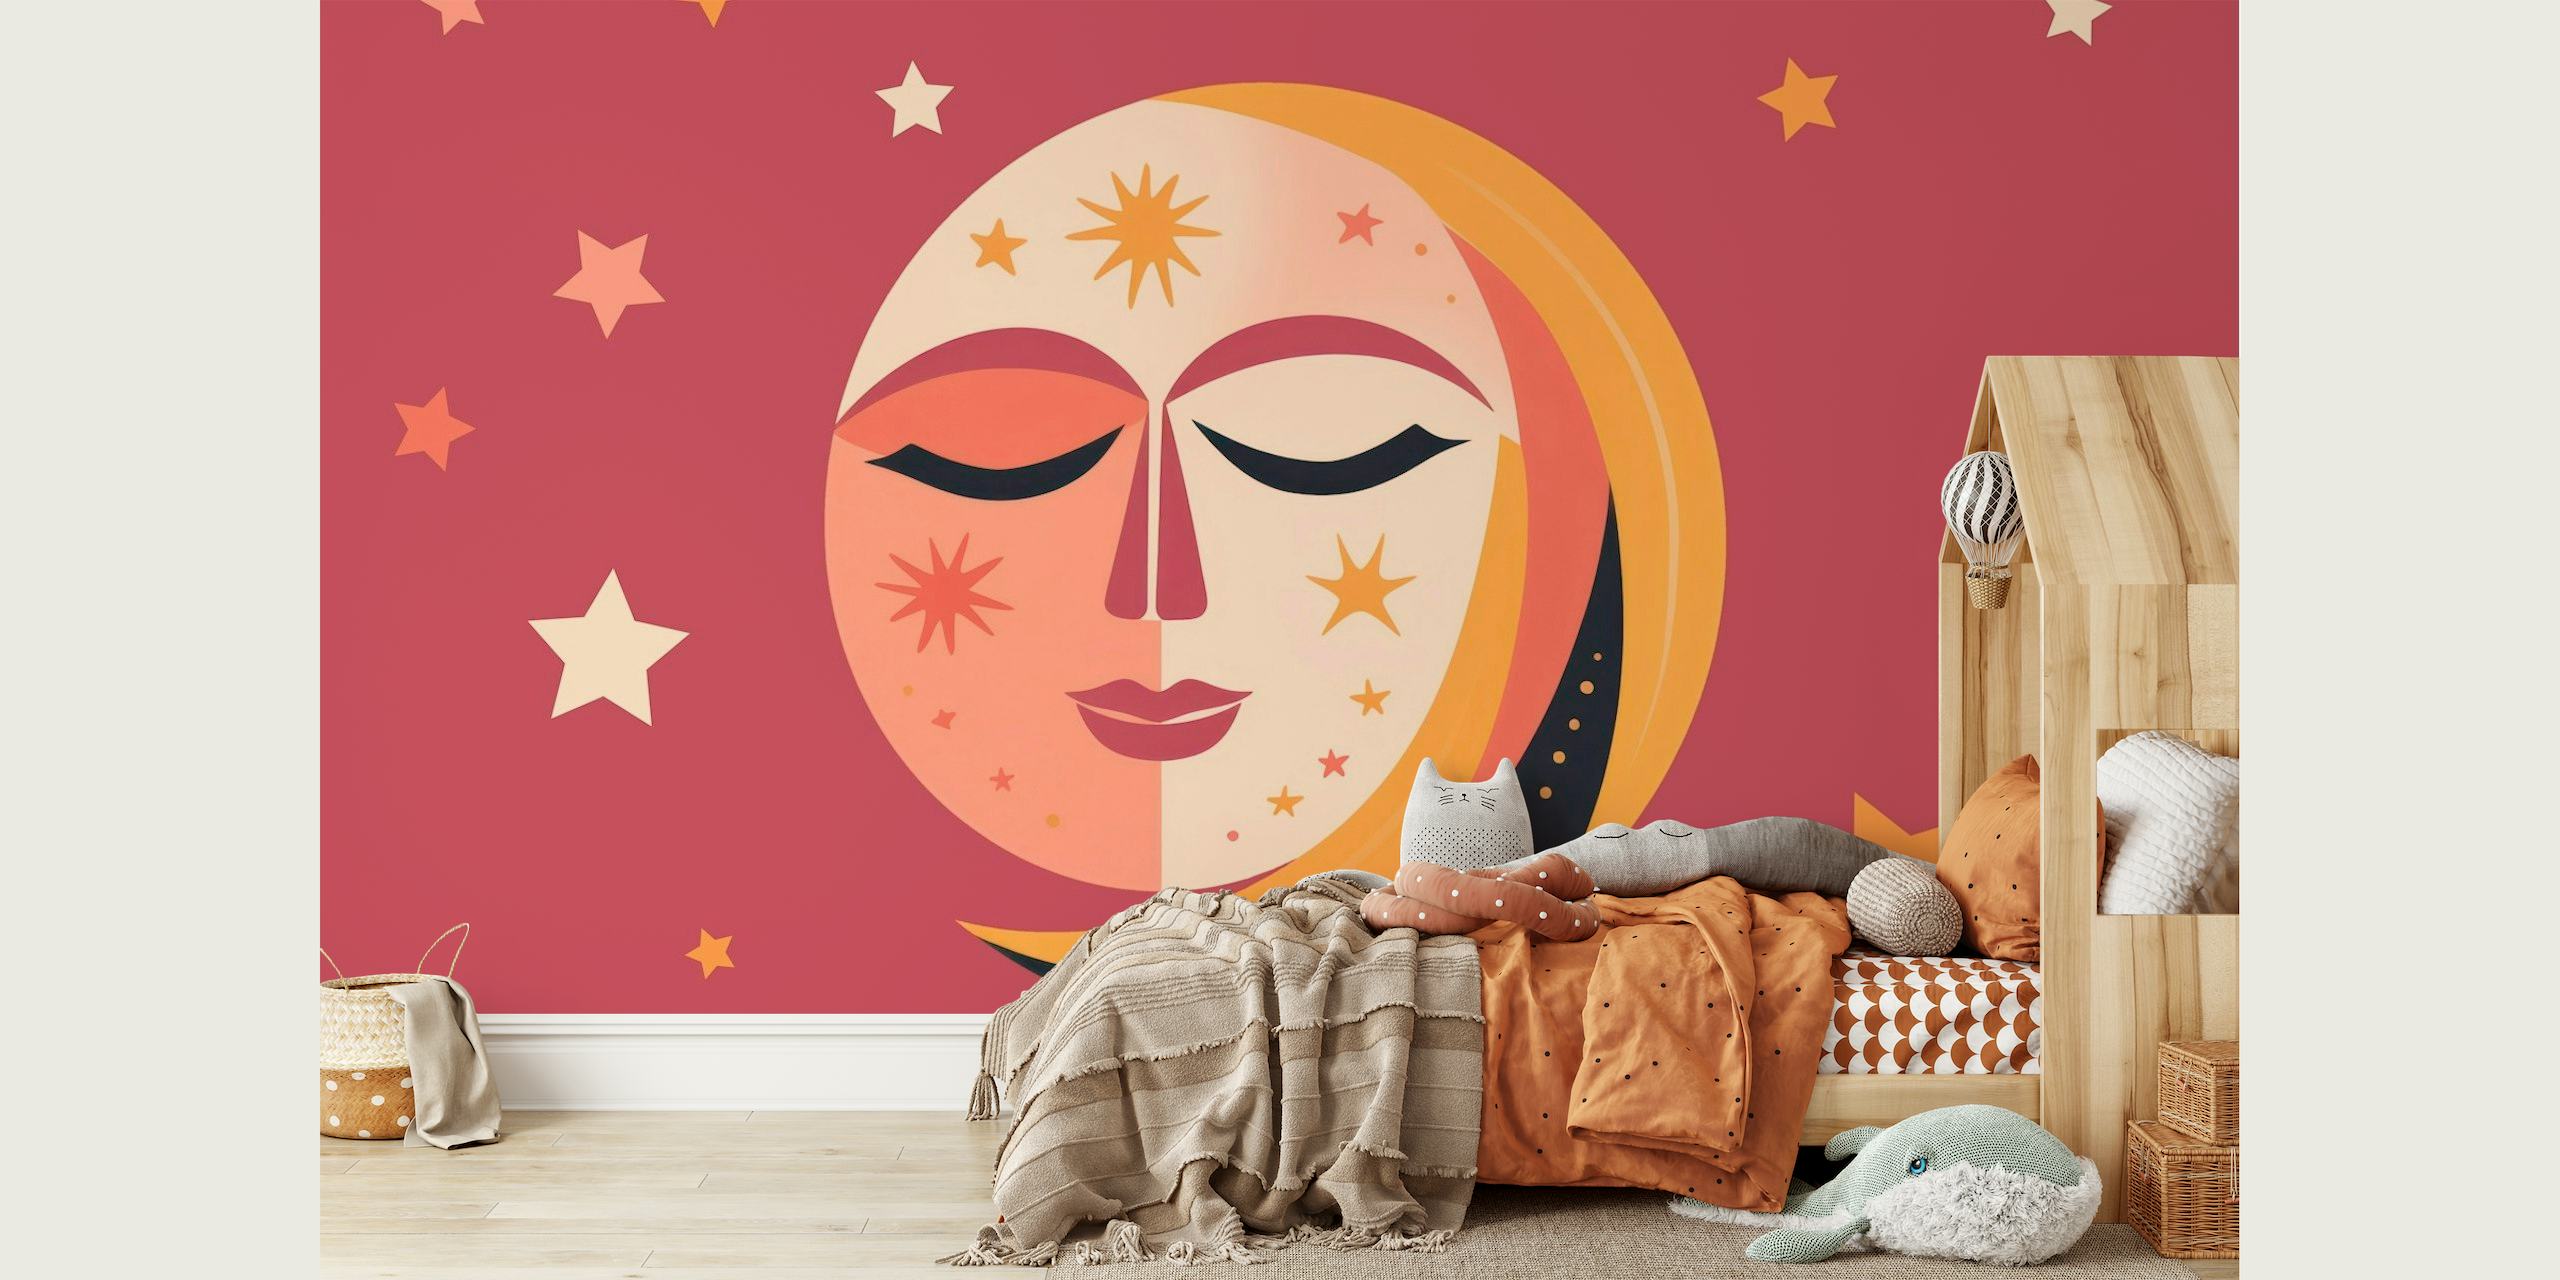 Whimsical Sun And Moon Face papel pintado